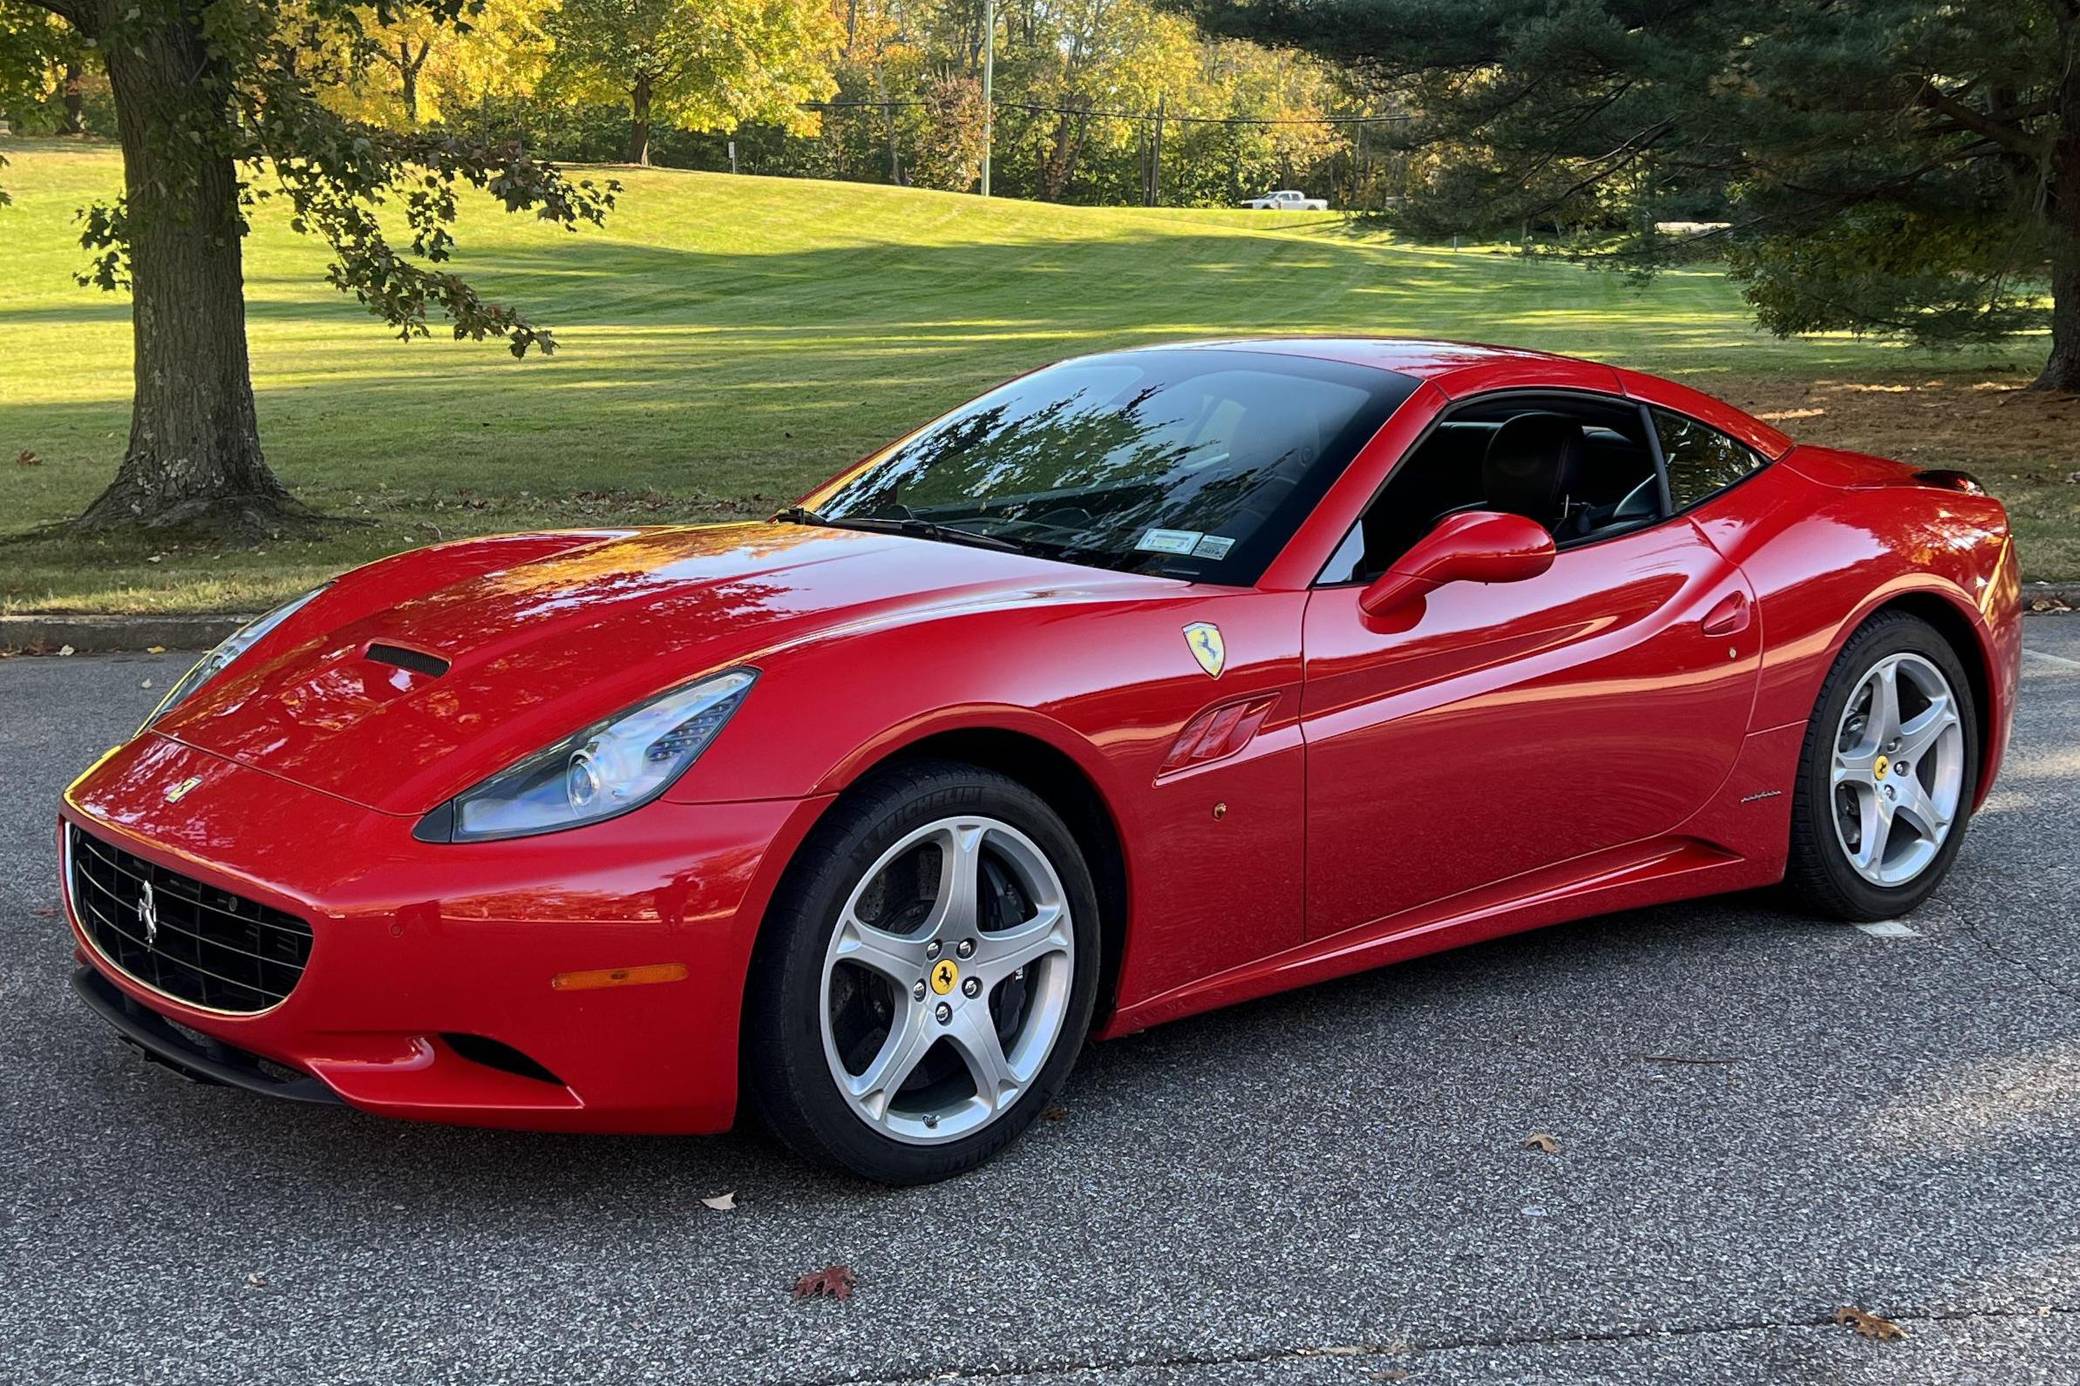 2013 Ferrari California for Sale - Cars & Bids